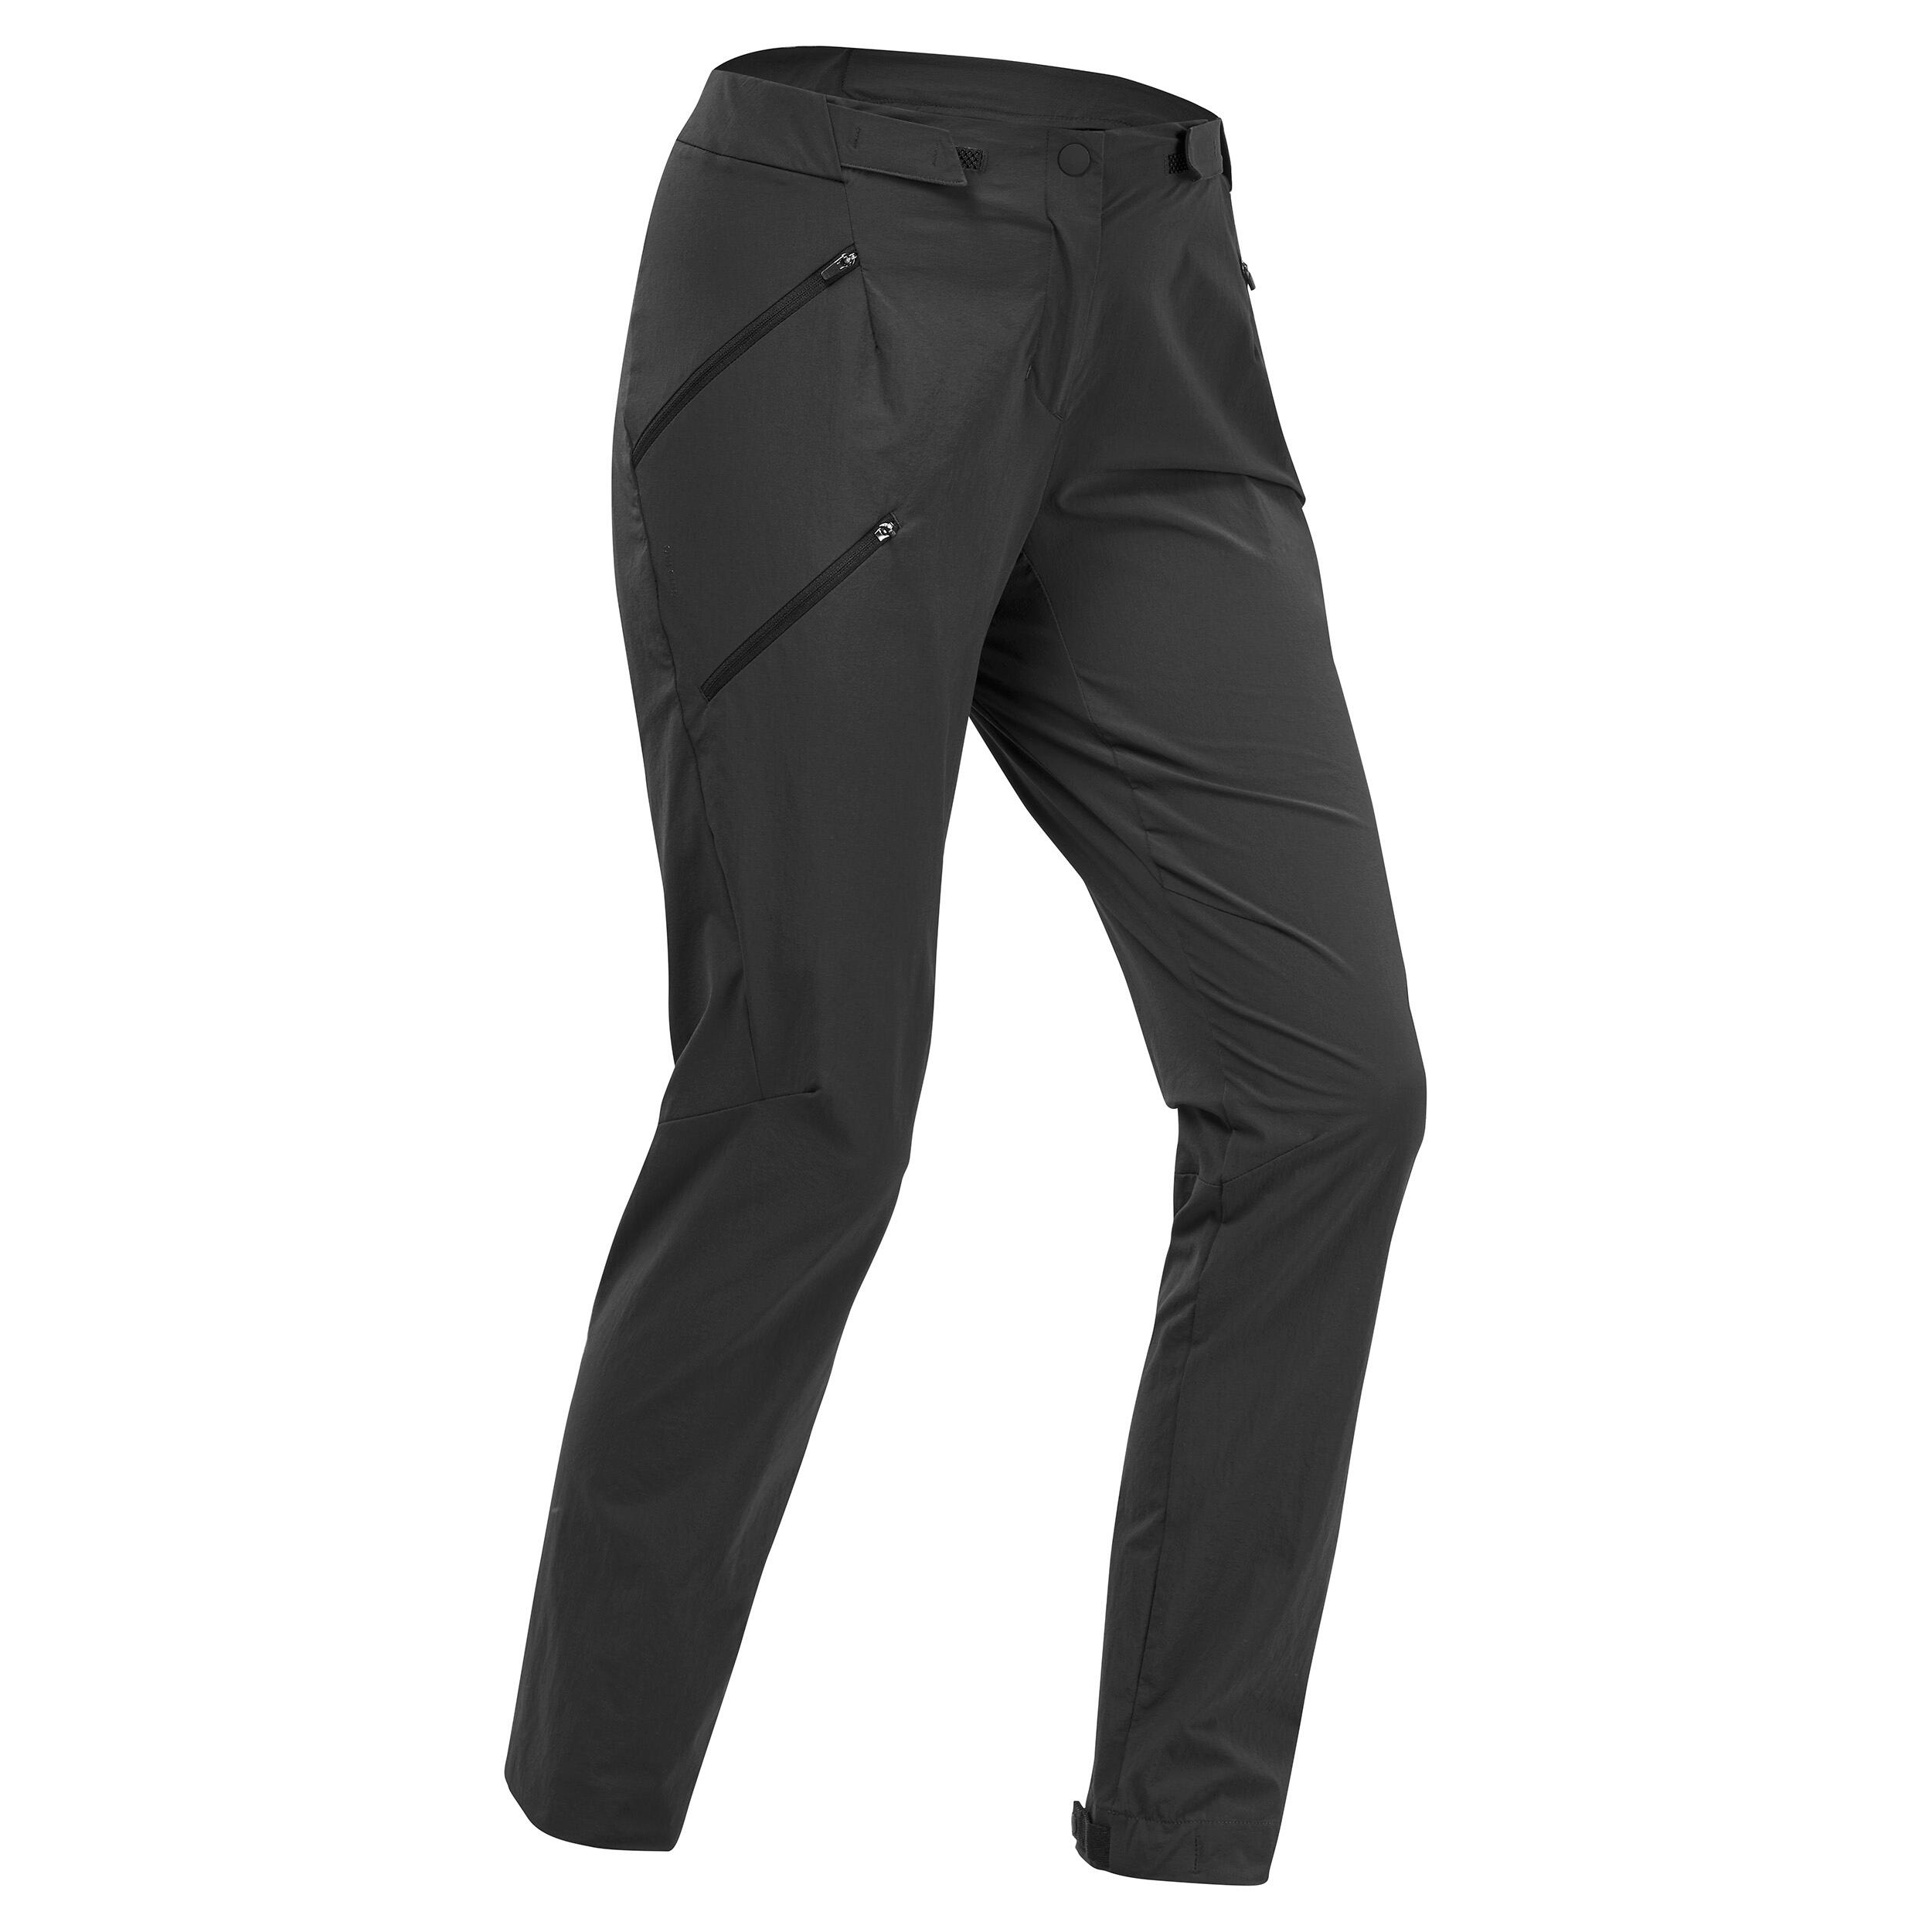 Women's Agnes Ski Pant BLACK | Buy Women's Agnes Ski Pant BLACK here |  Outnorth